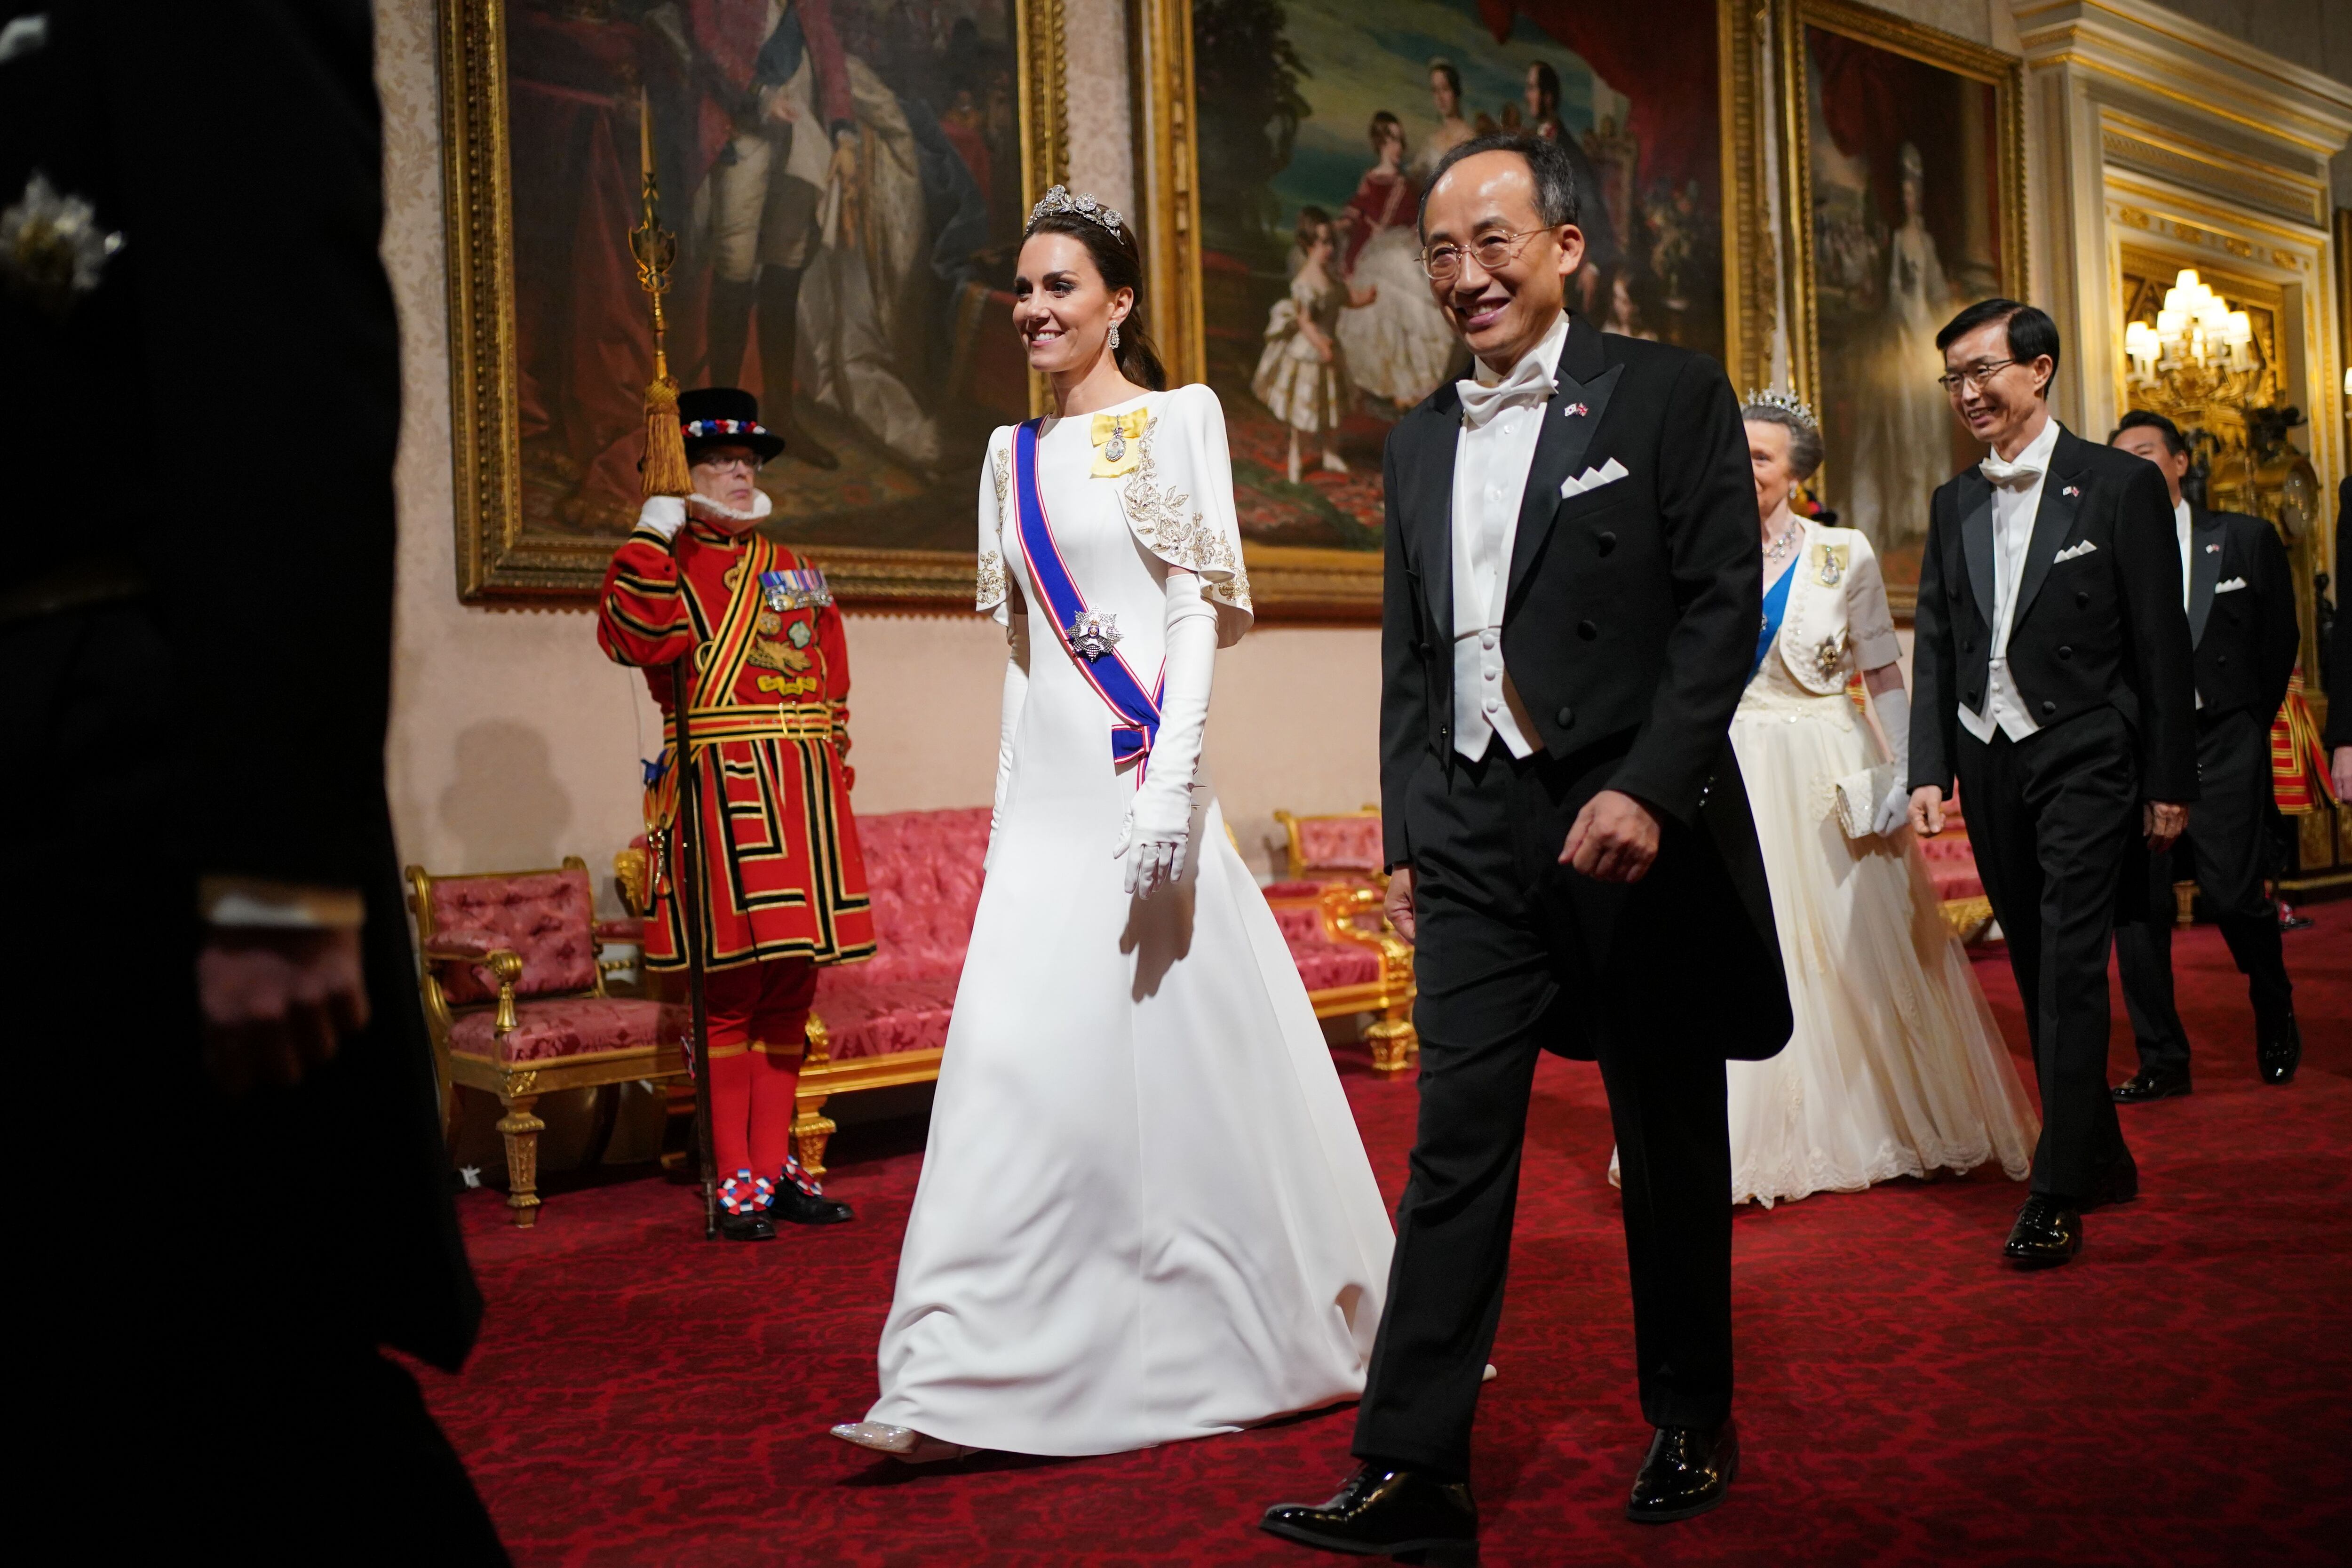 Kate Middleton, acompañada del vicepresidente de Corea del Sur, Choo Kyung-ho, seguida de la princesa Anna, a su entrada al banquete ofrecido en el palacio de Buckingham, el 21 de noviembre.